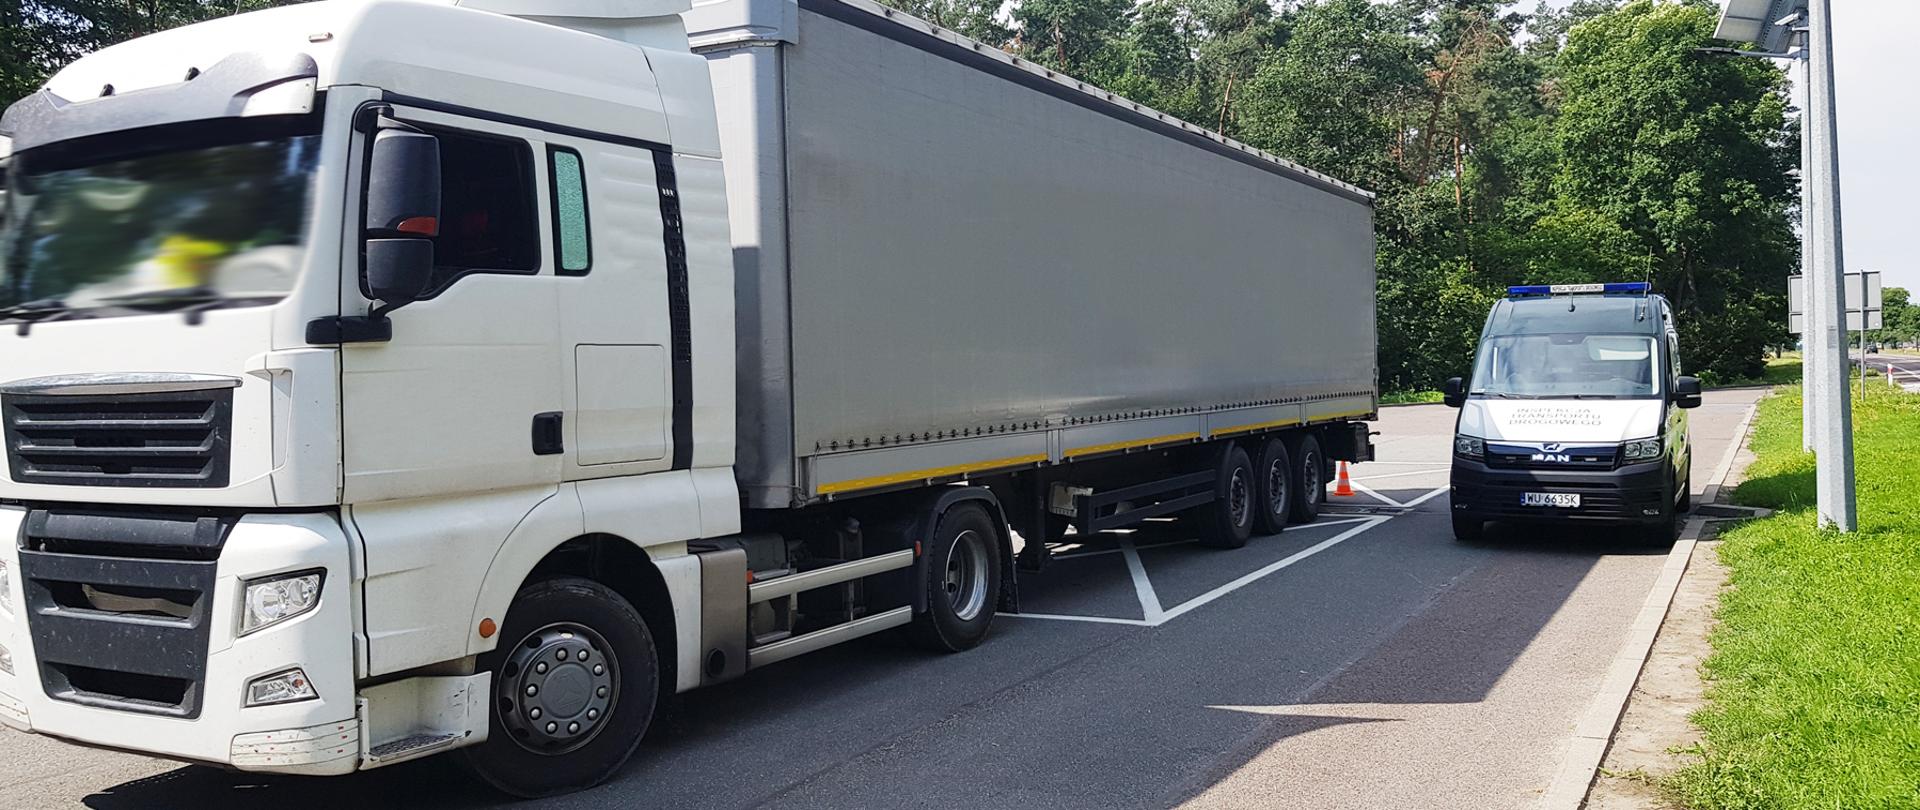 Ciężarówka zatrzymana do kontroli przez inspektorów lubelskiej Inspekcji Transportu Drogowego. Po lewej skontrolowany zespół pojazdów, po prawej inspekcyjny furgon. W tle, po prawej, ruch na drodze krajowej.